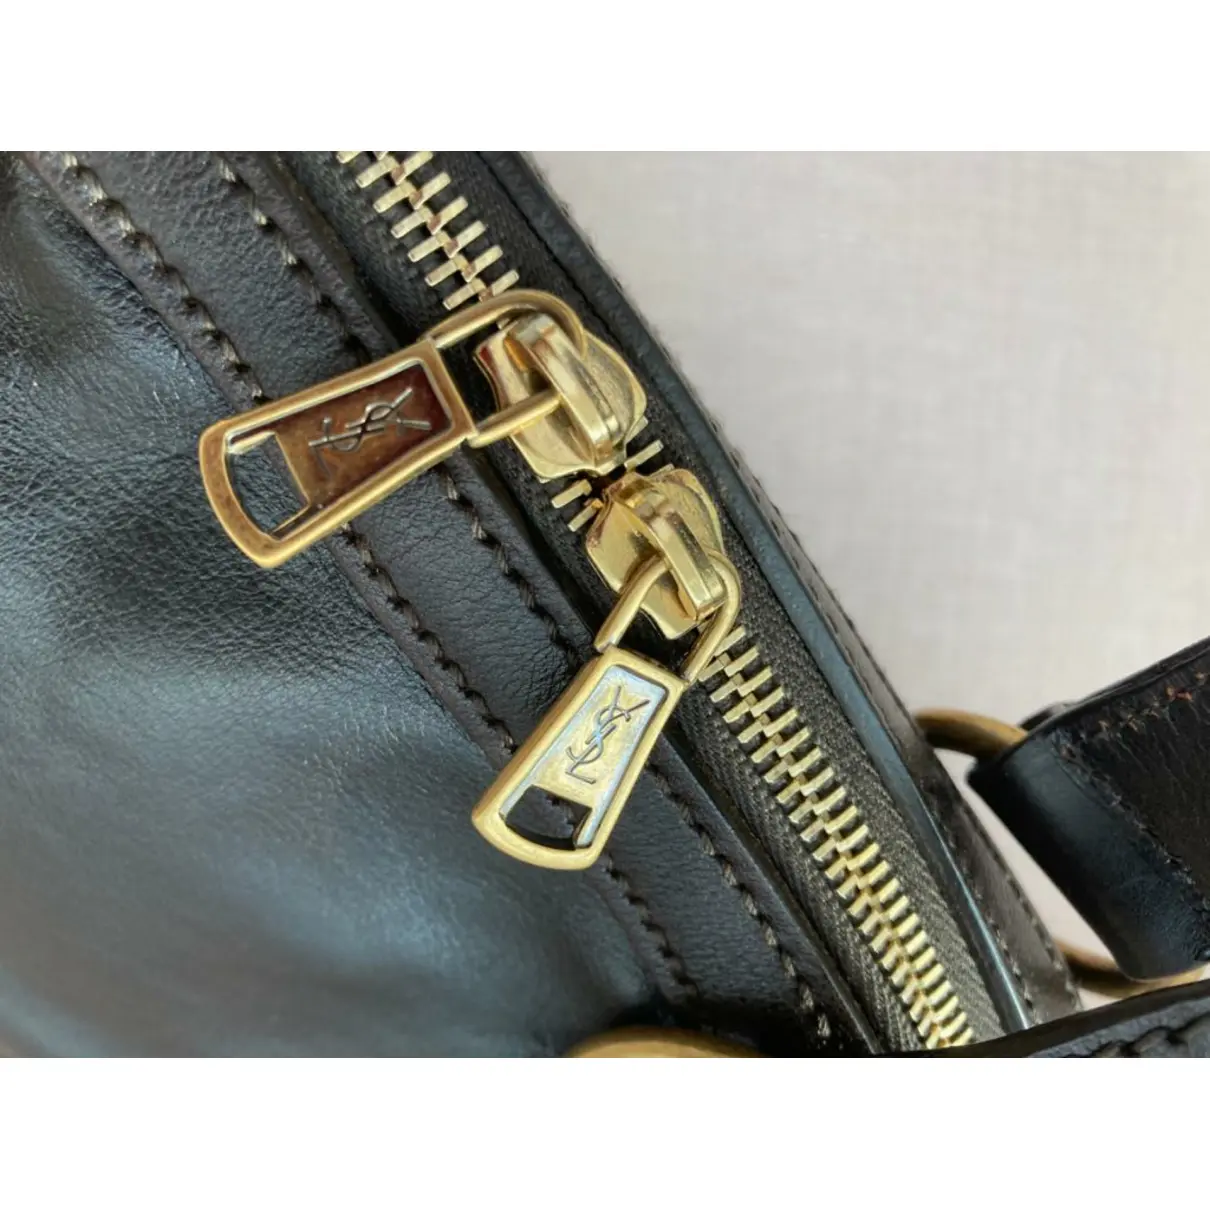 Muse leather handbag Yves Saint Laurent - Vintage